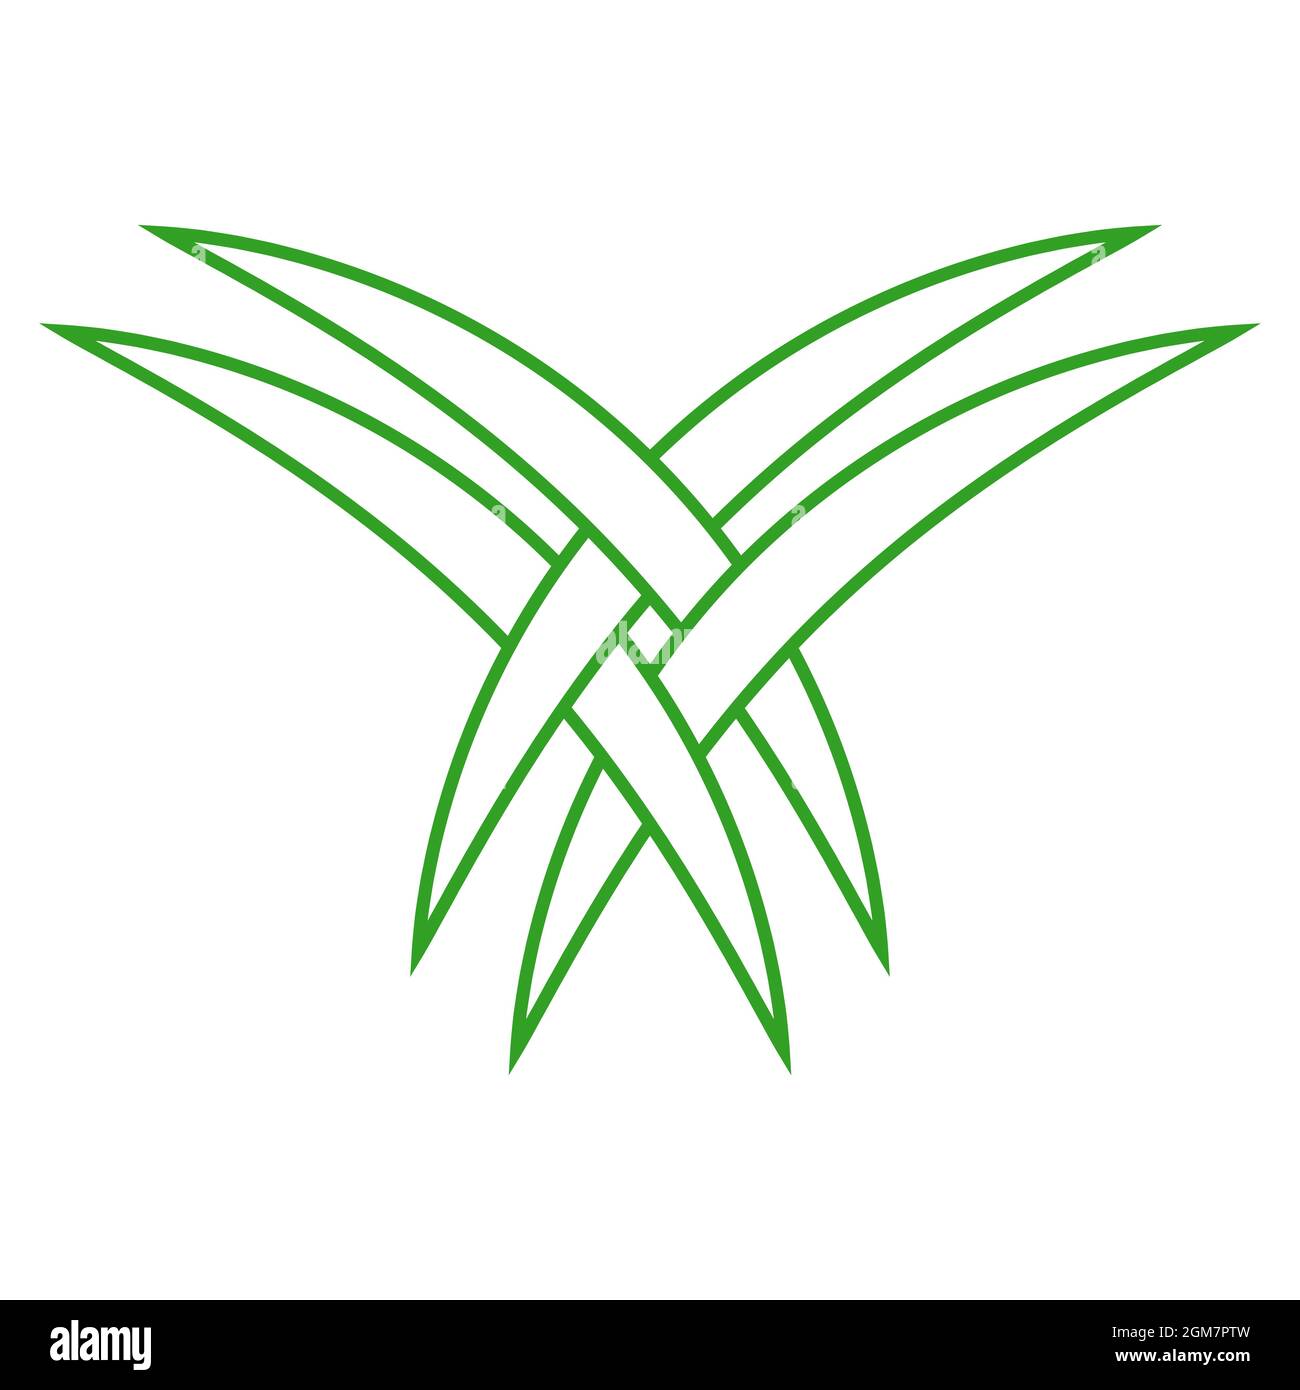 Le foglie di palma intrecciate sono il logo turistico dell'Arabia Saudita Illustrazione Vettoriale